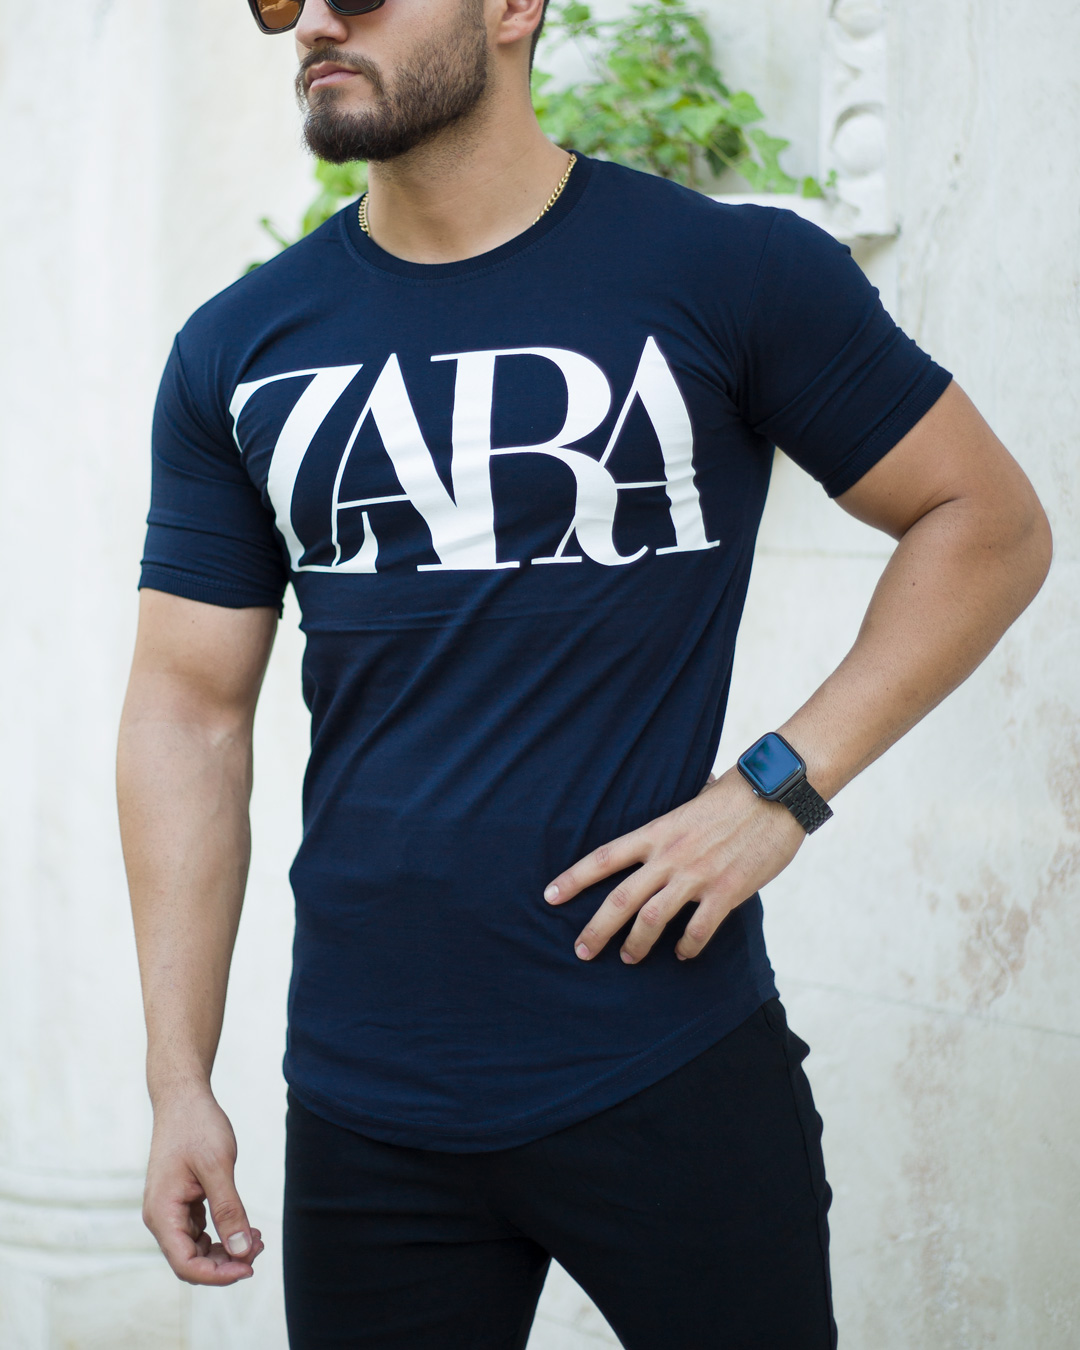 تیشرت مردانه مدل ZARA (سرمه ای)